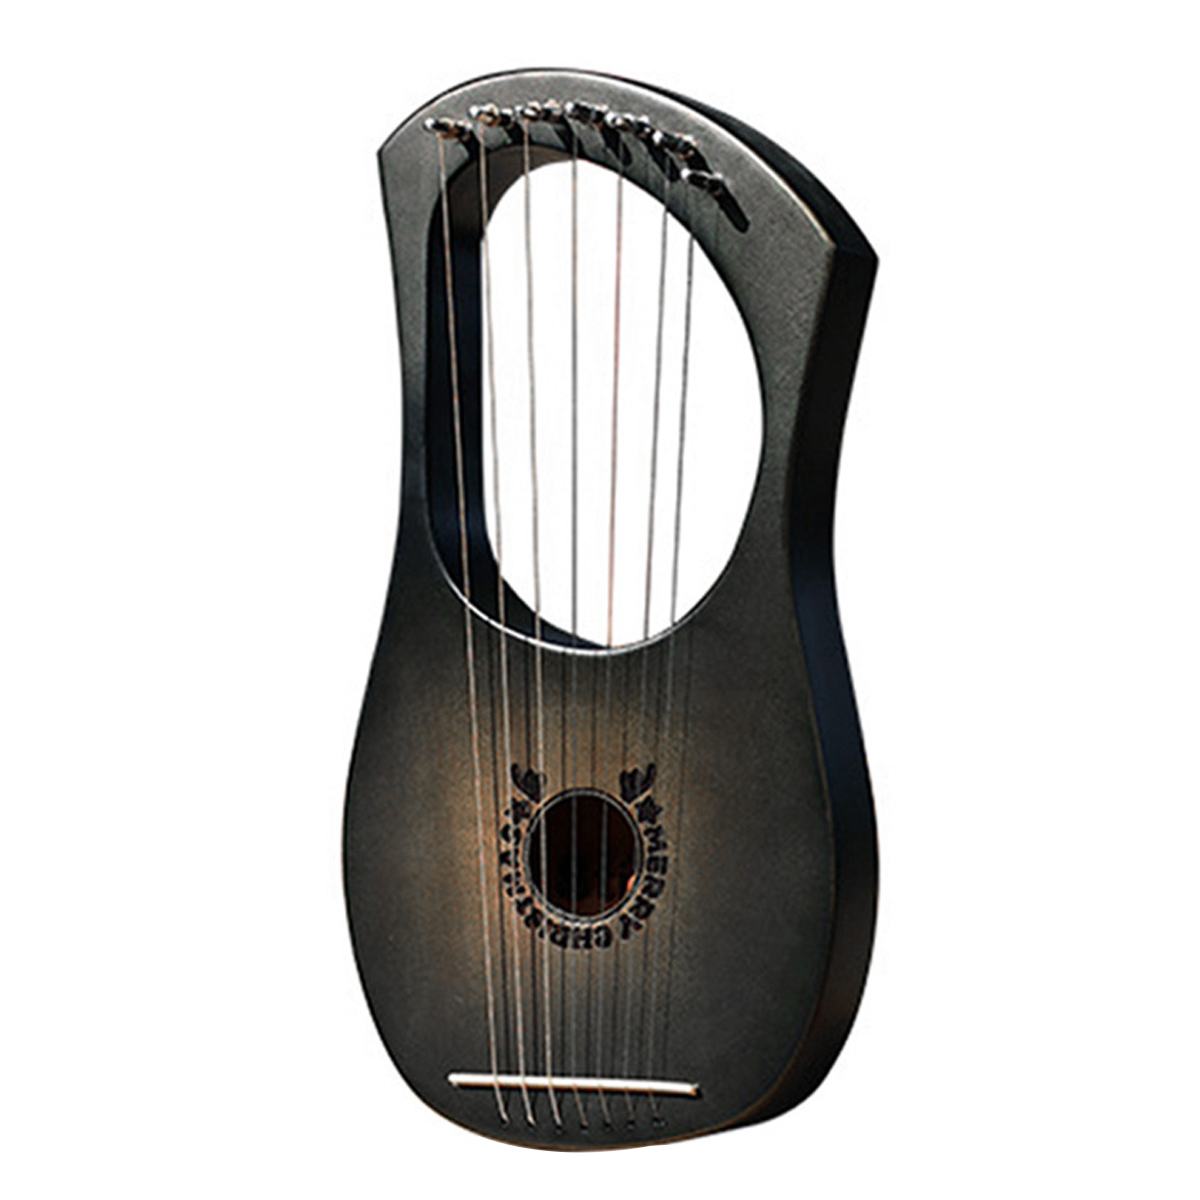 Træ mahogni 7 -strenget lyre harpe strenge musikinstrument med pickup tuning hammer rengøringsklud harpe instrument: Gevir sort